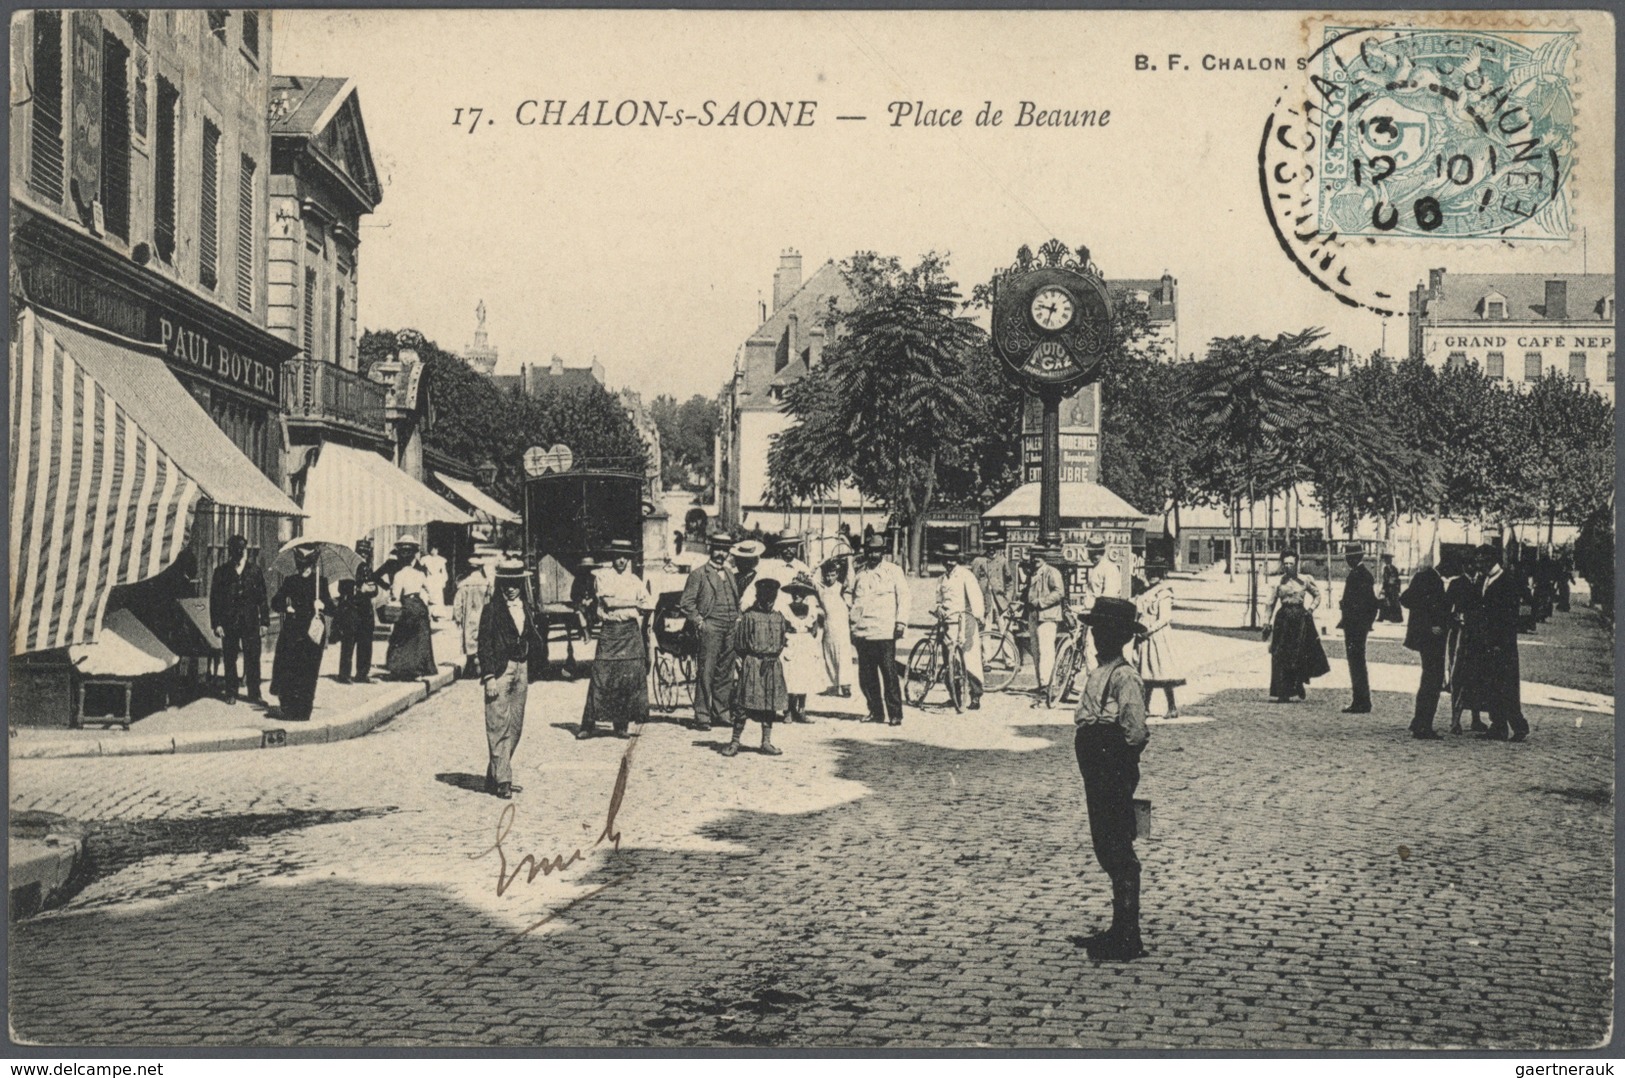 Frankreich - Besonderheiten: 1898/1930, FRANCE, immense stock of around 51500 historical picture pos